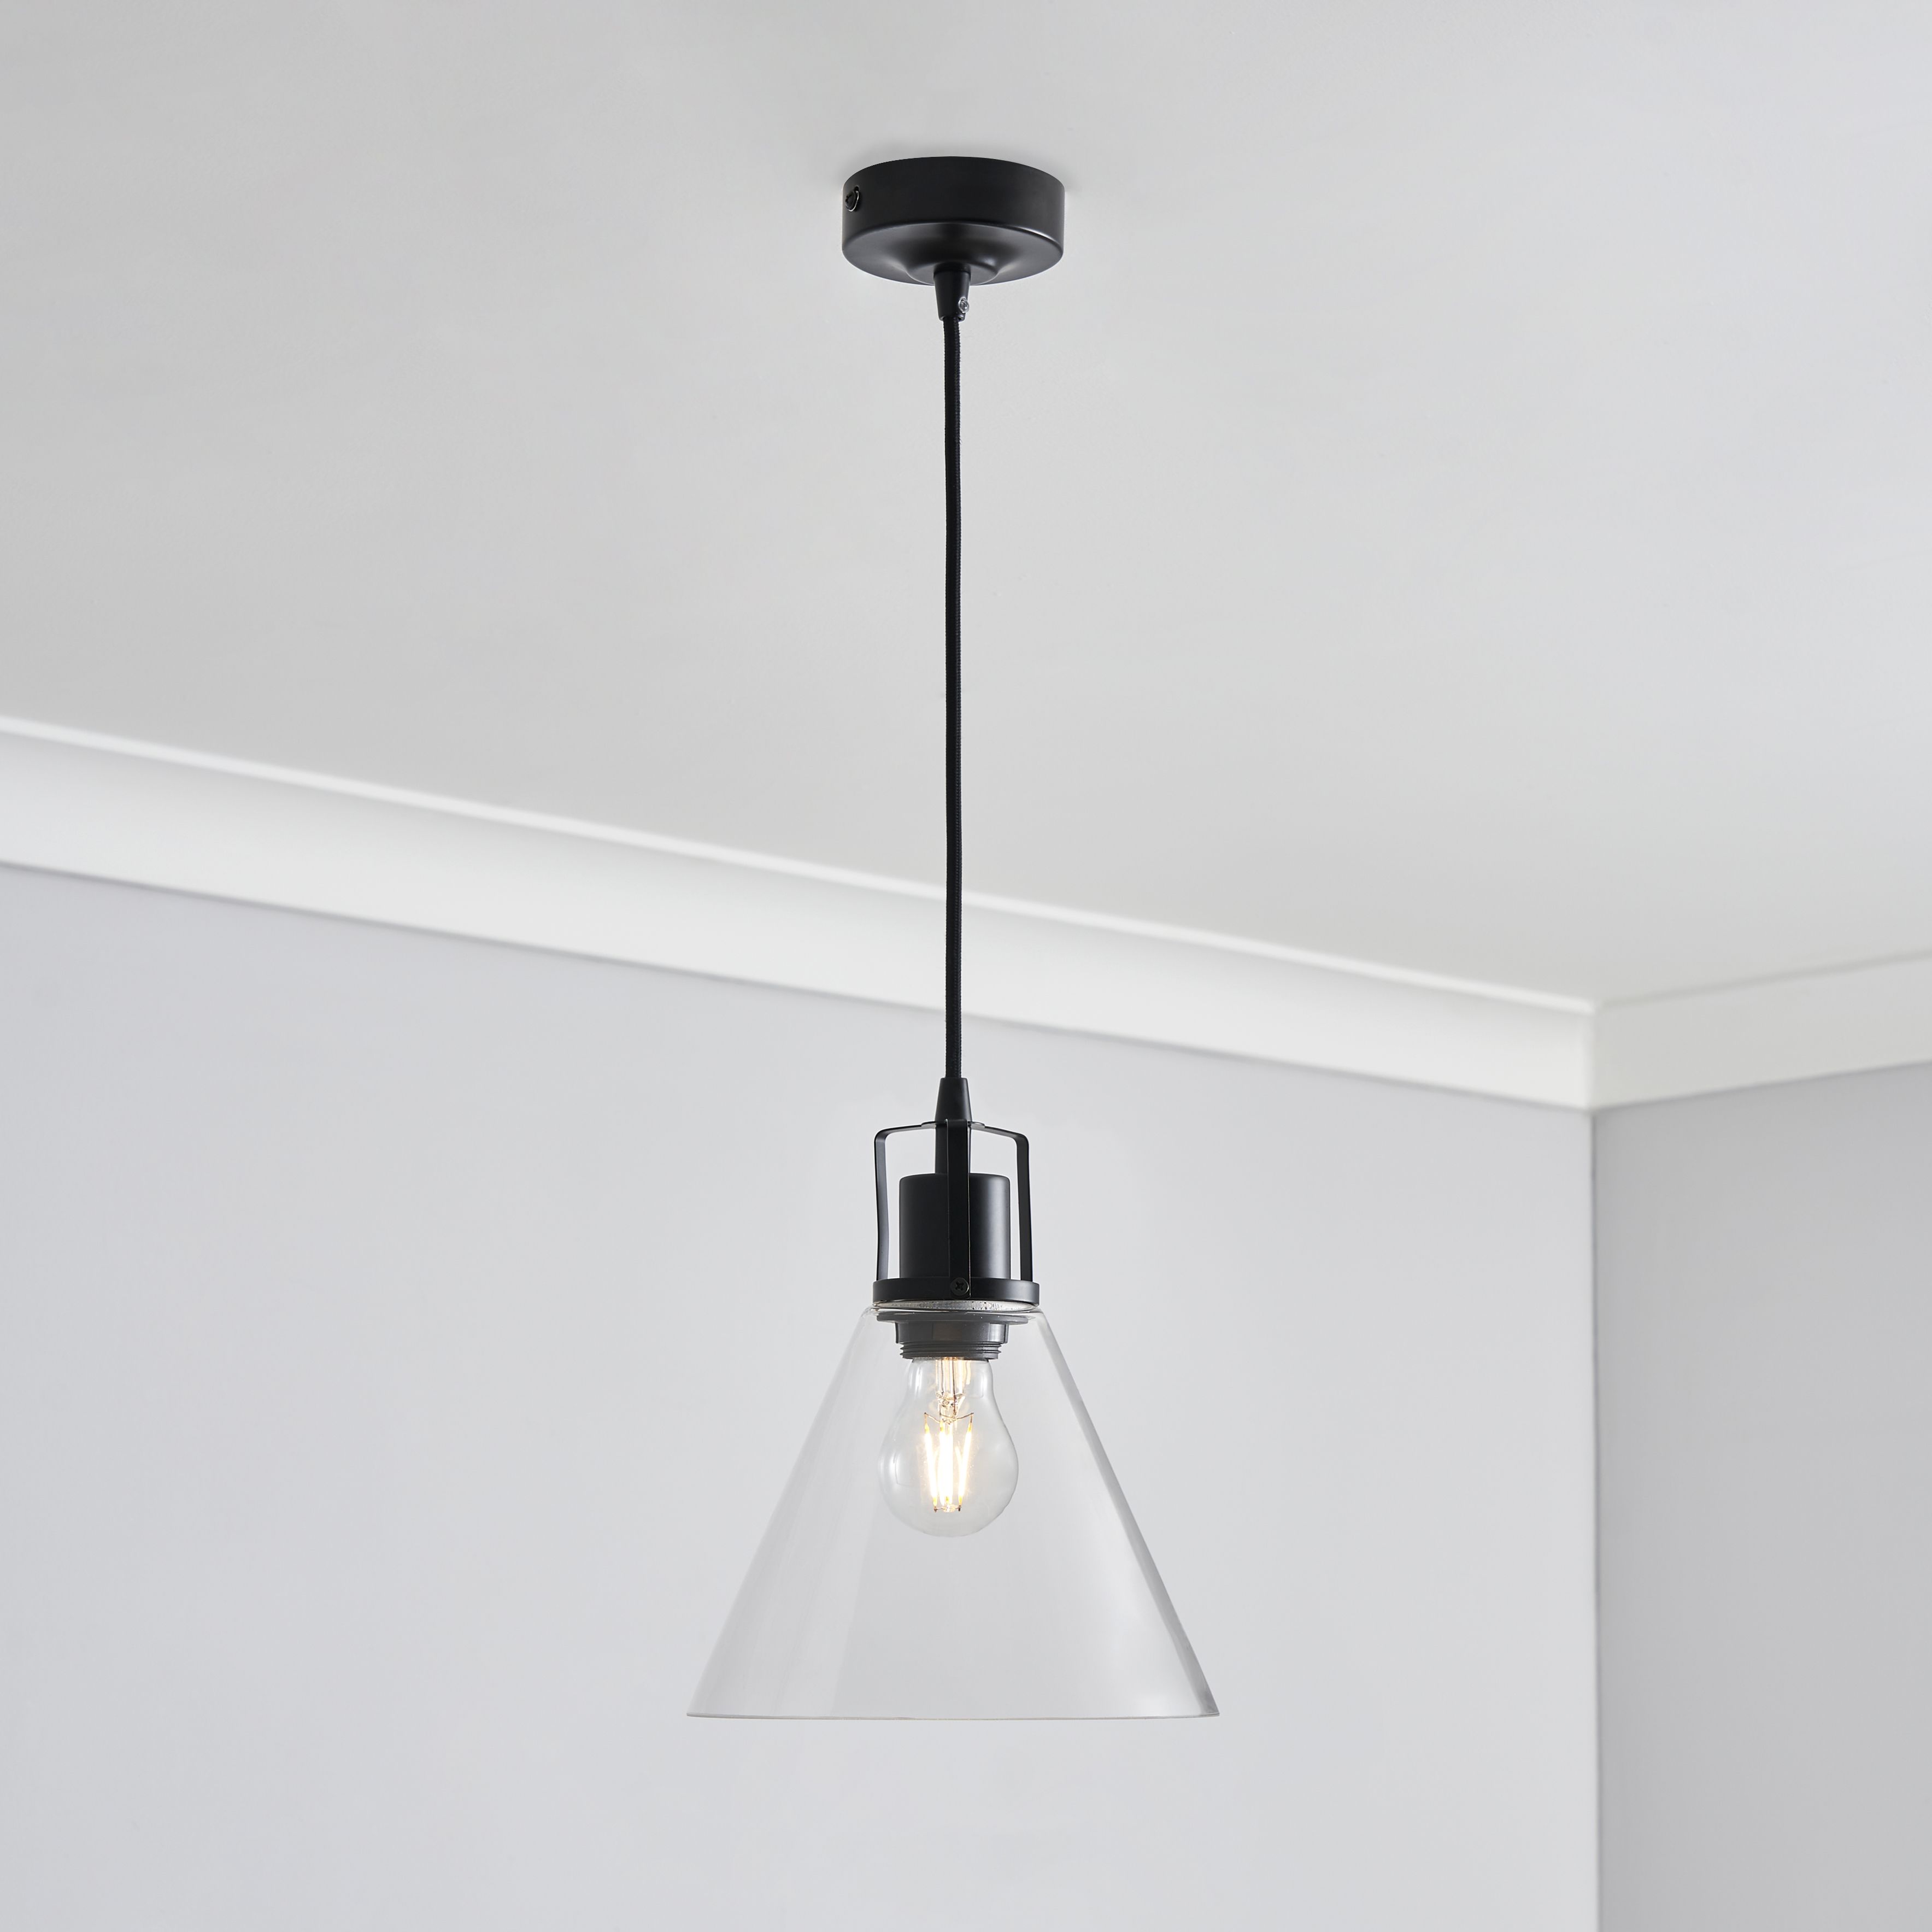 Inlight Dafyd Matt Glass & metal LED Ceiling light